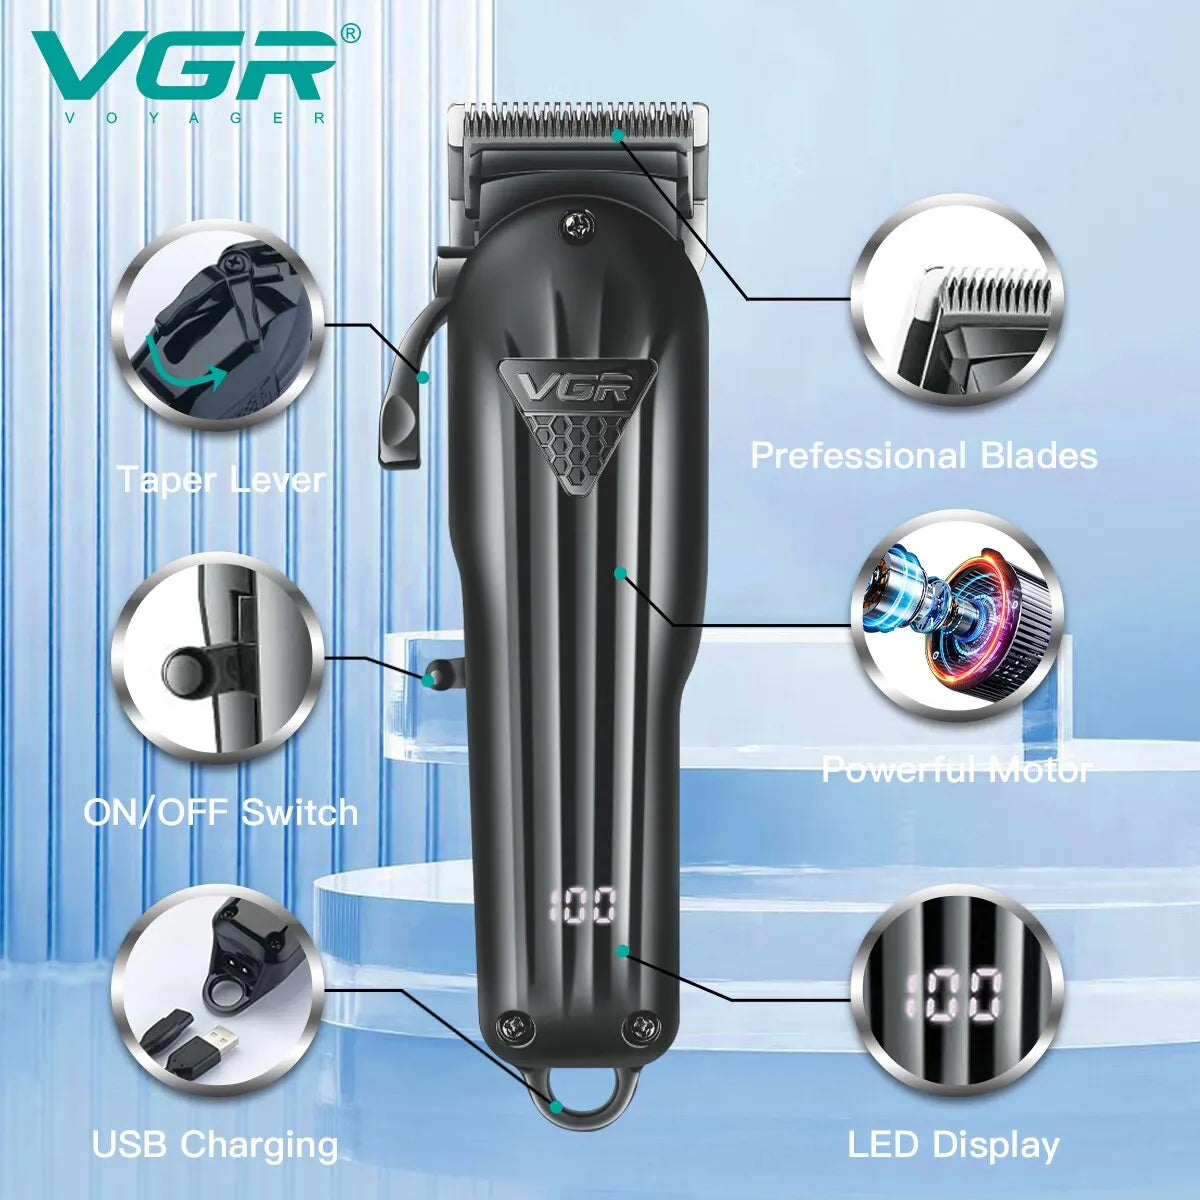 VGR Hair Clipper Professional Hair Cutting